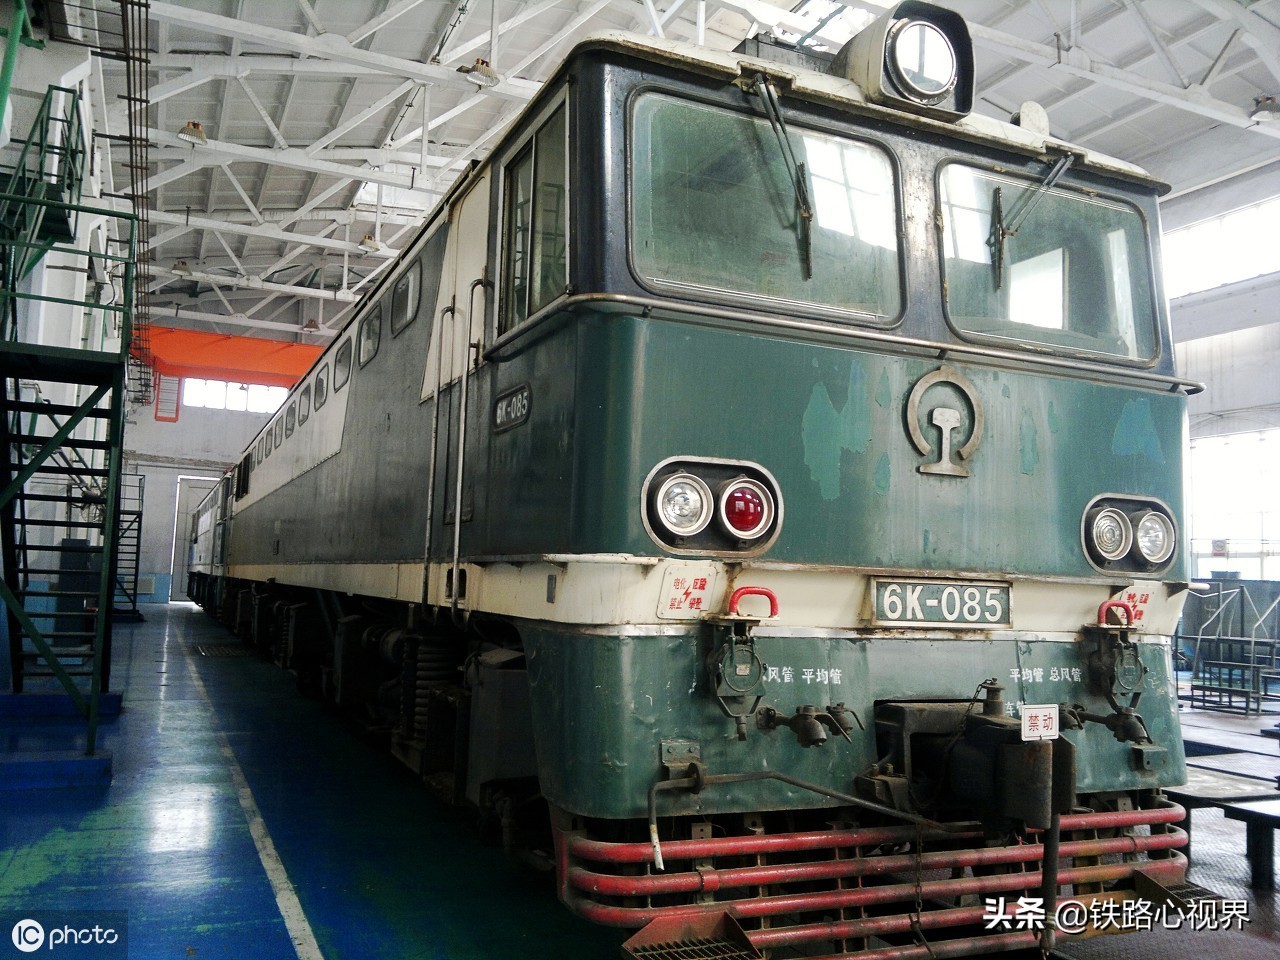 6k型电力机车:由日本川崎重工引进,对国产电力机车发展影响深远